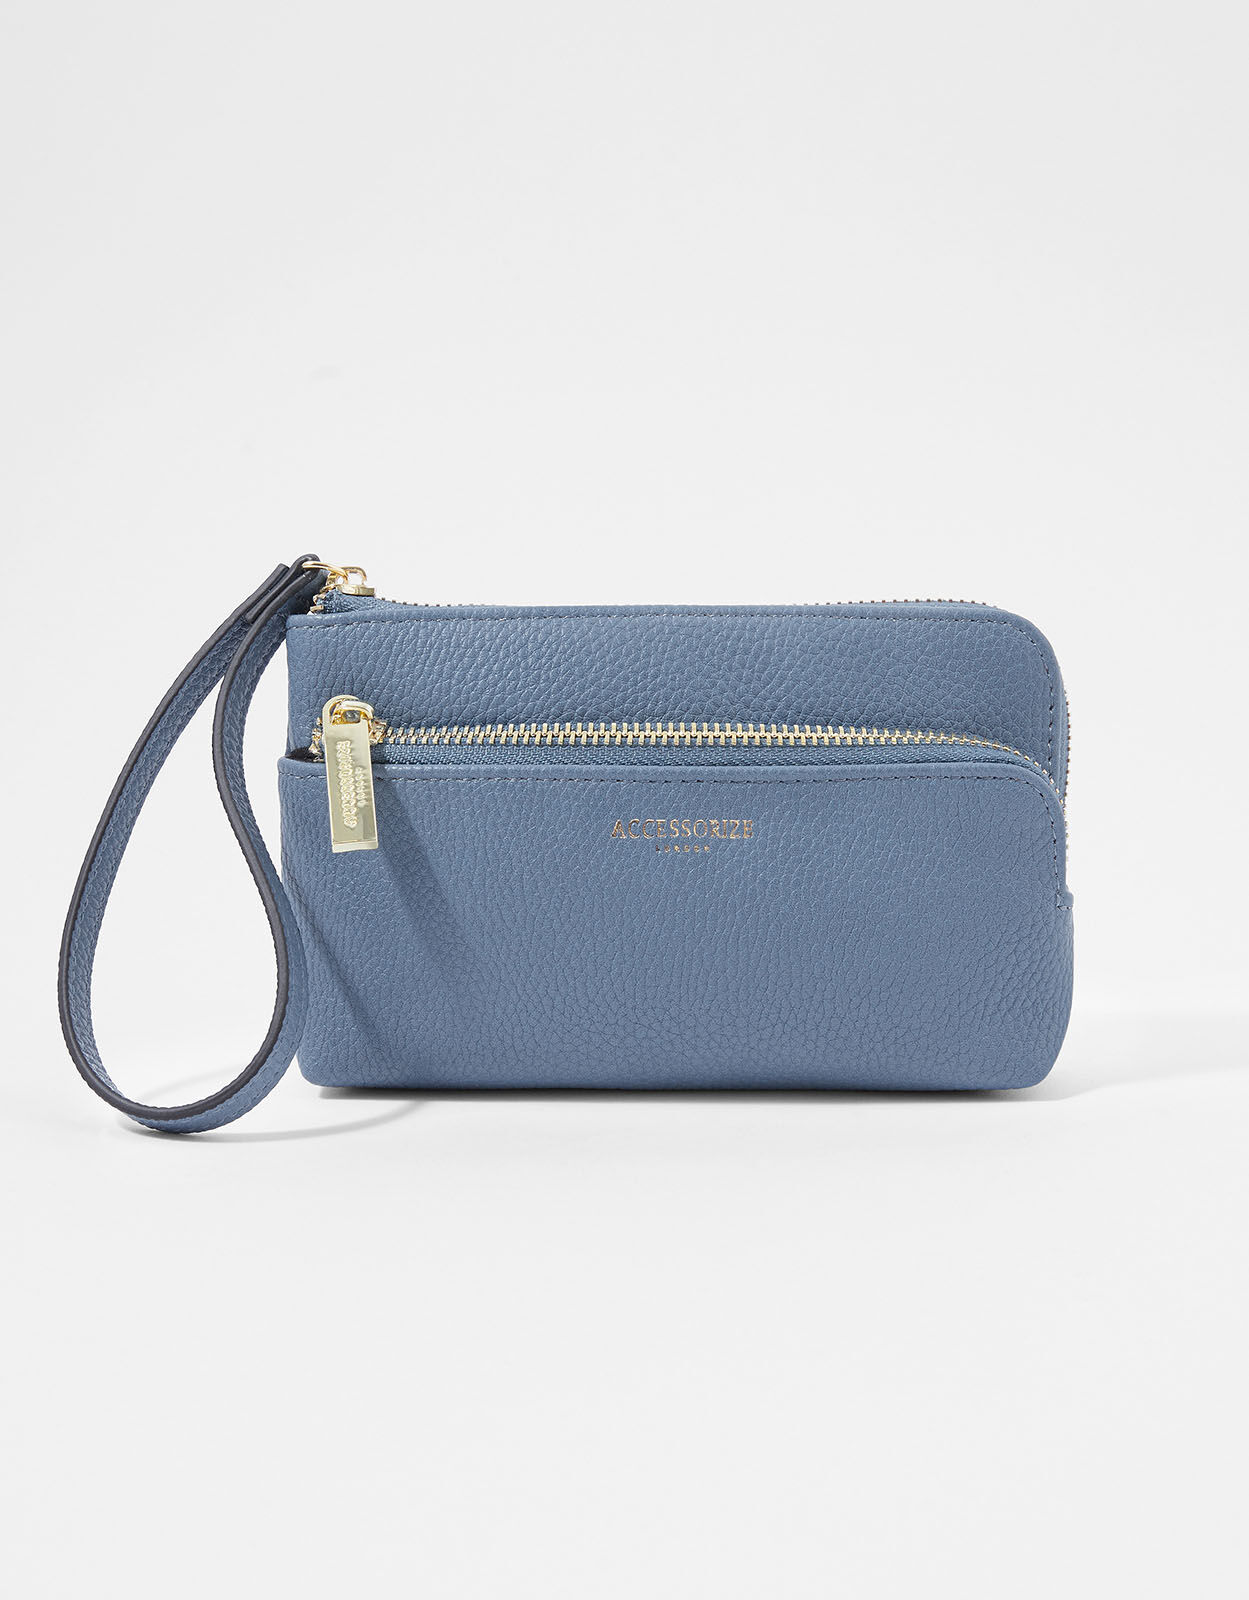 Accessorize Monsoon Accessorize Wristlet 2 section bag wallet purse blue soft faux leather 